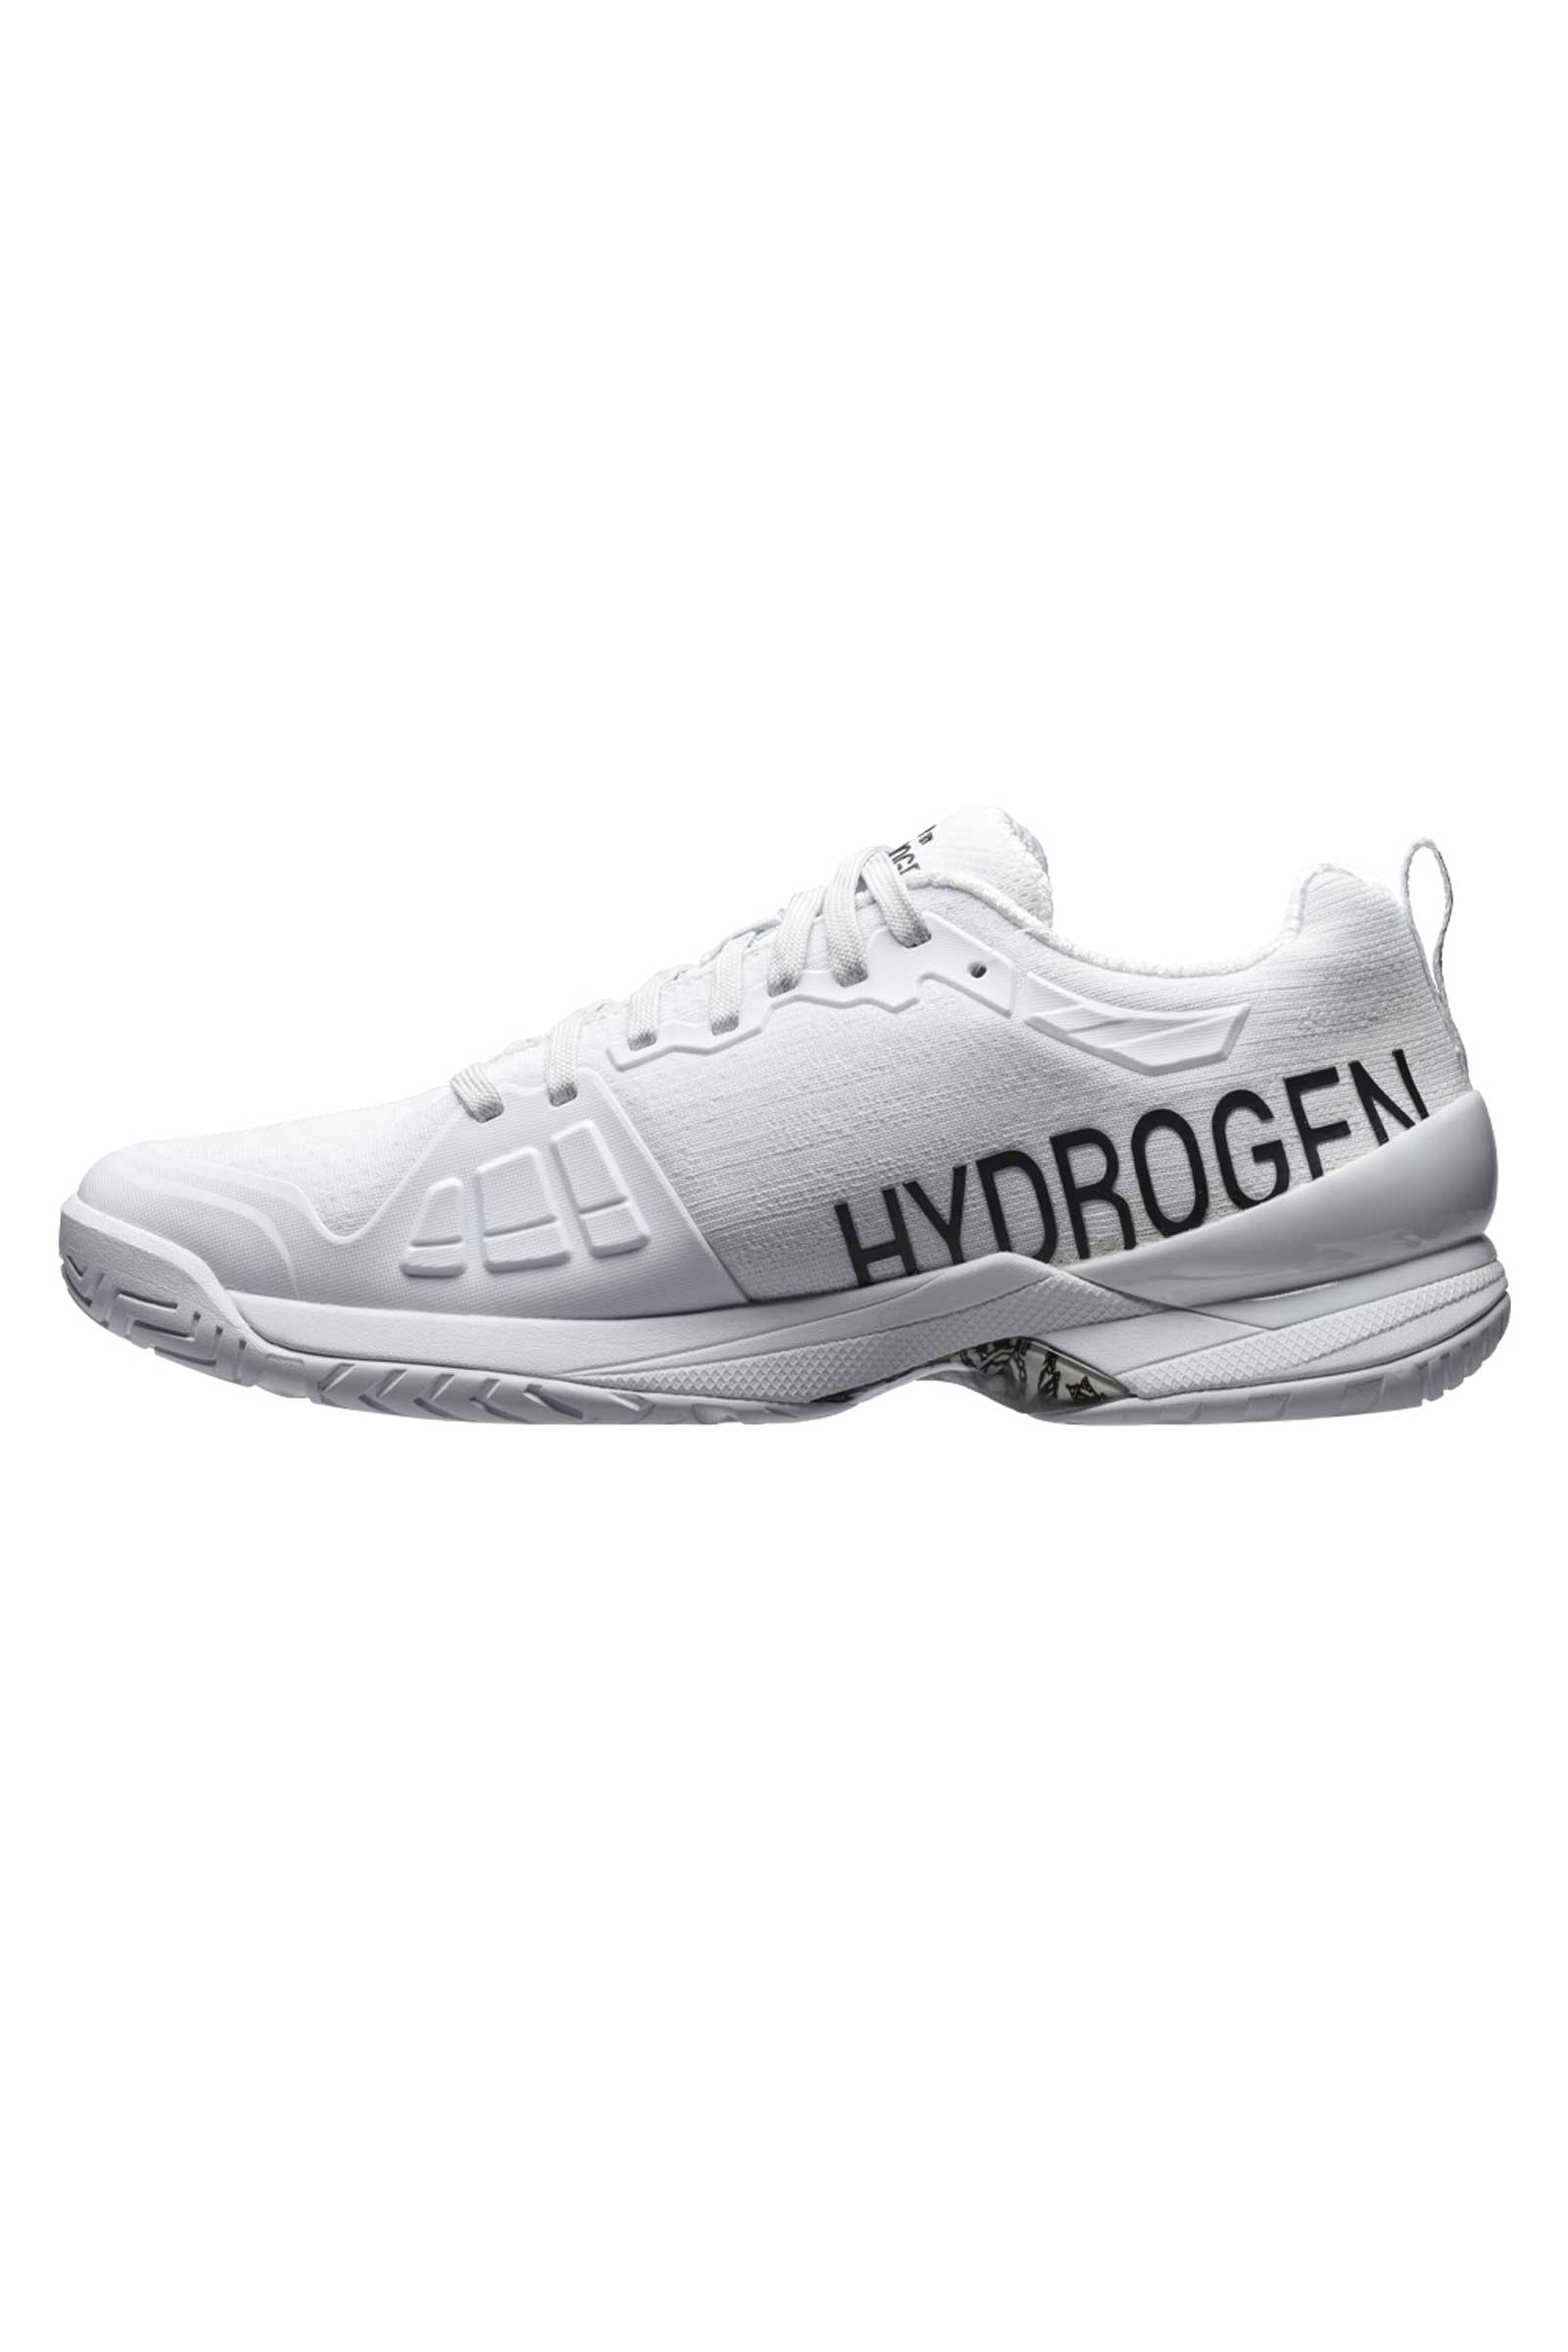 TENNIS SHOES PRINCE BY HYDROGEN - WHITE - Hydrogen - Luxury Sportwear